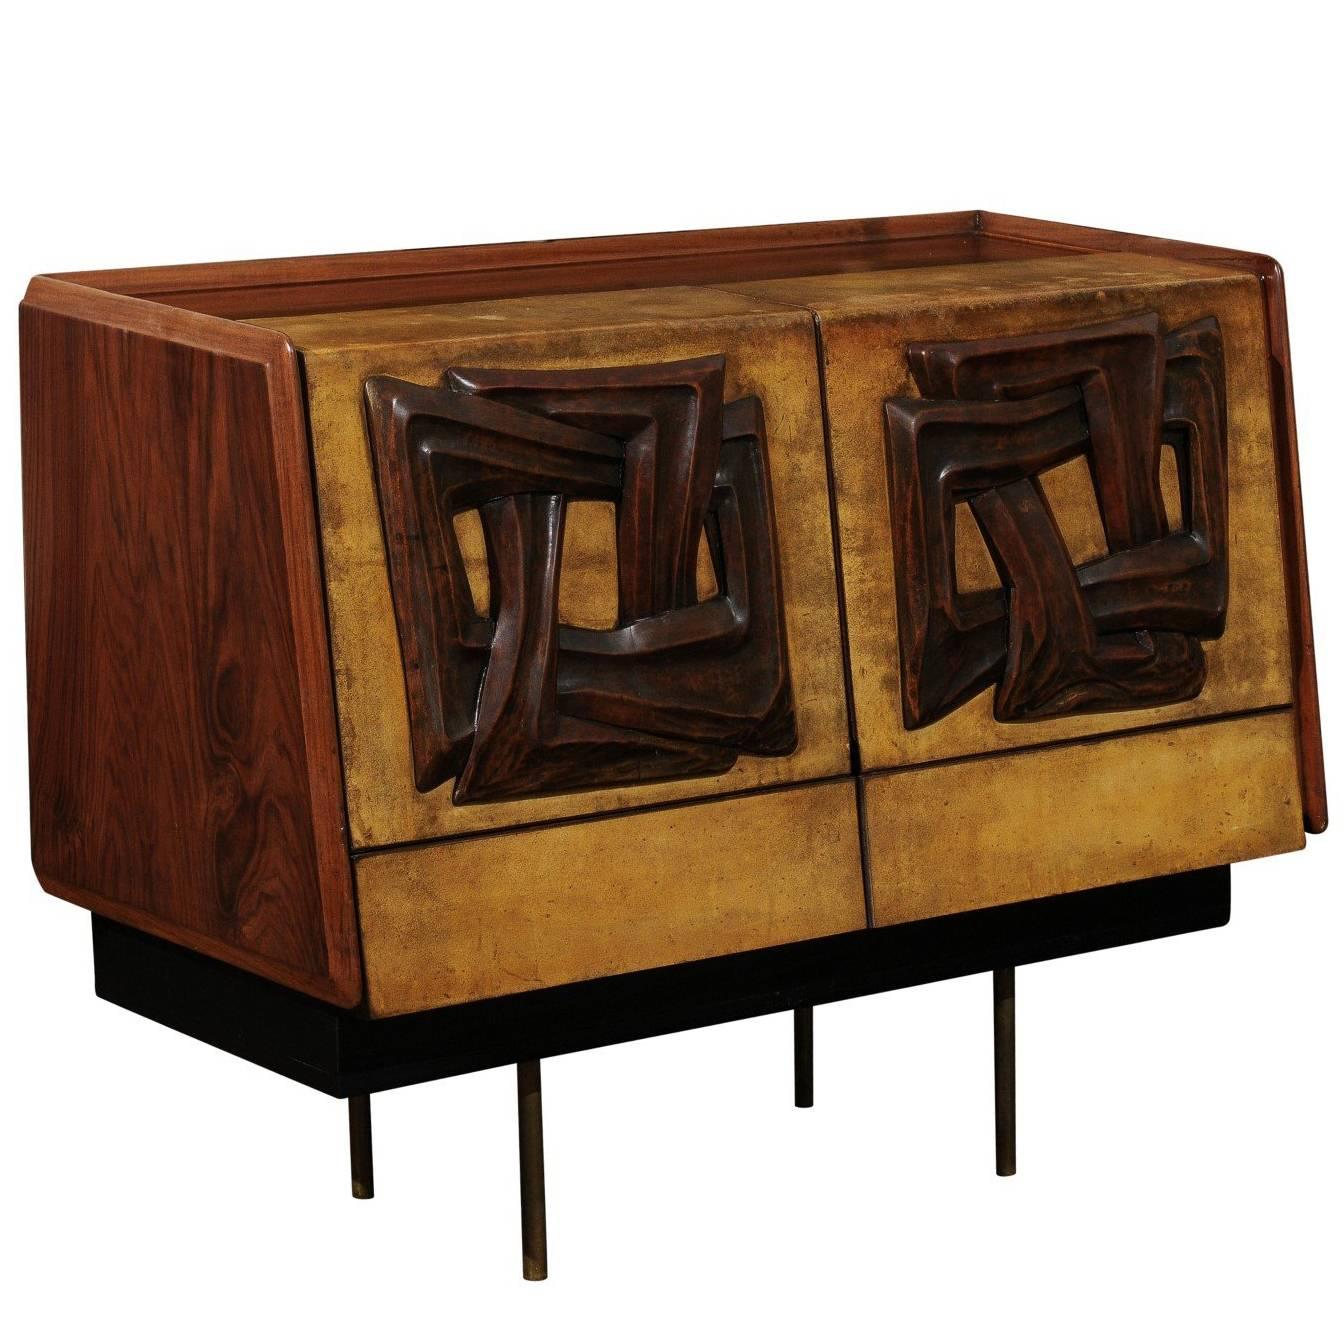 Magnifique meuble de bar attribué à Claude Vassal, datant d'environ 1950